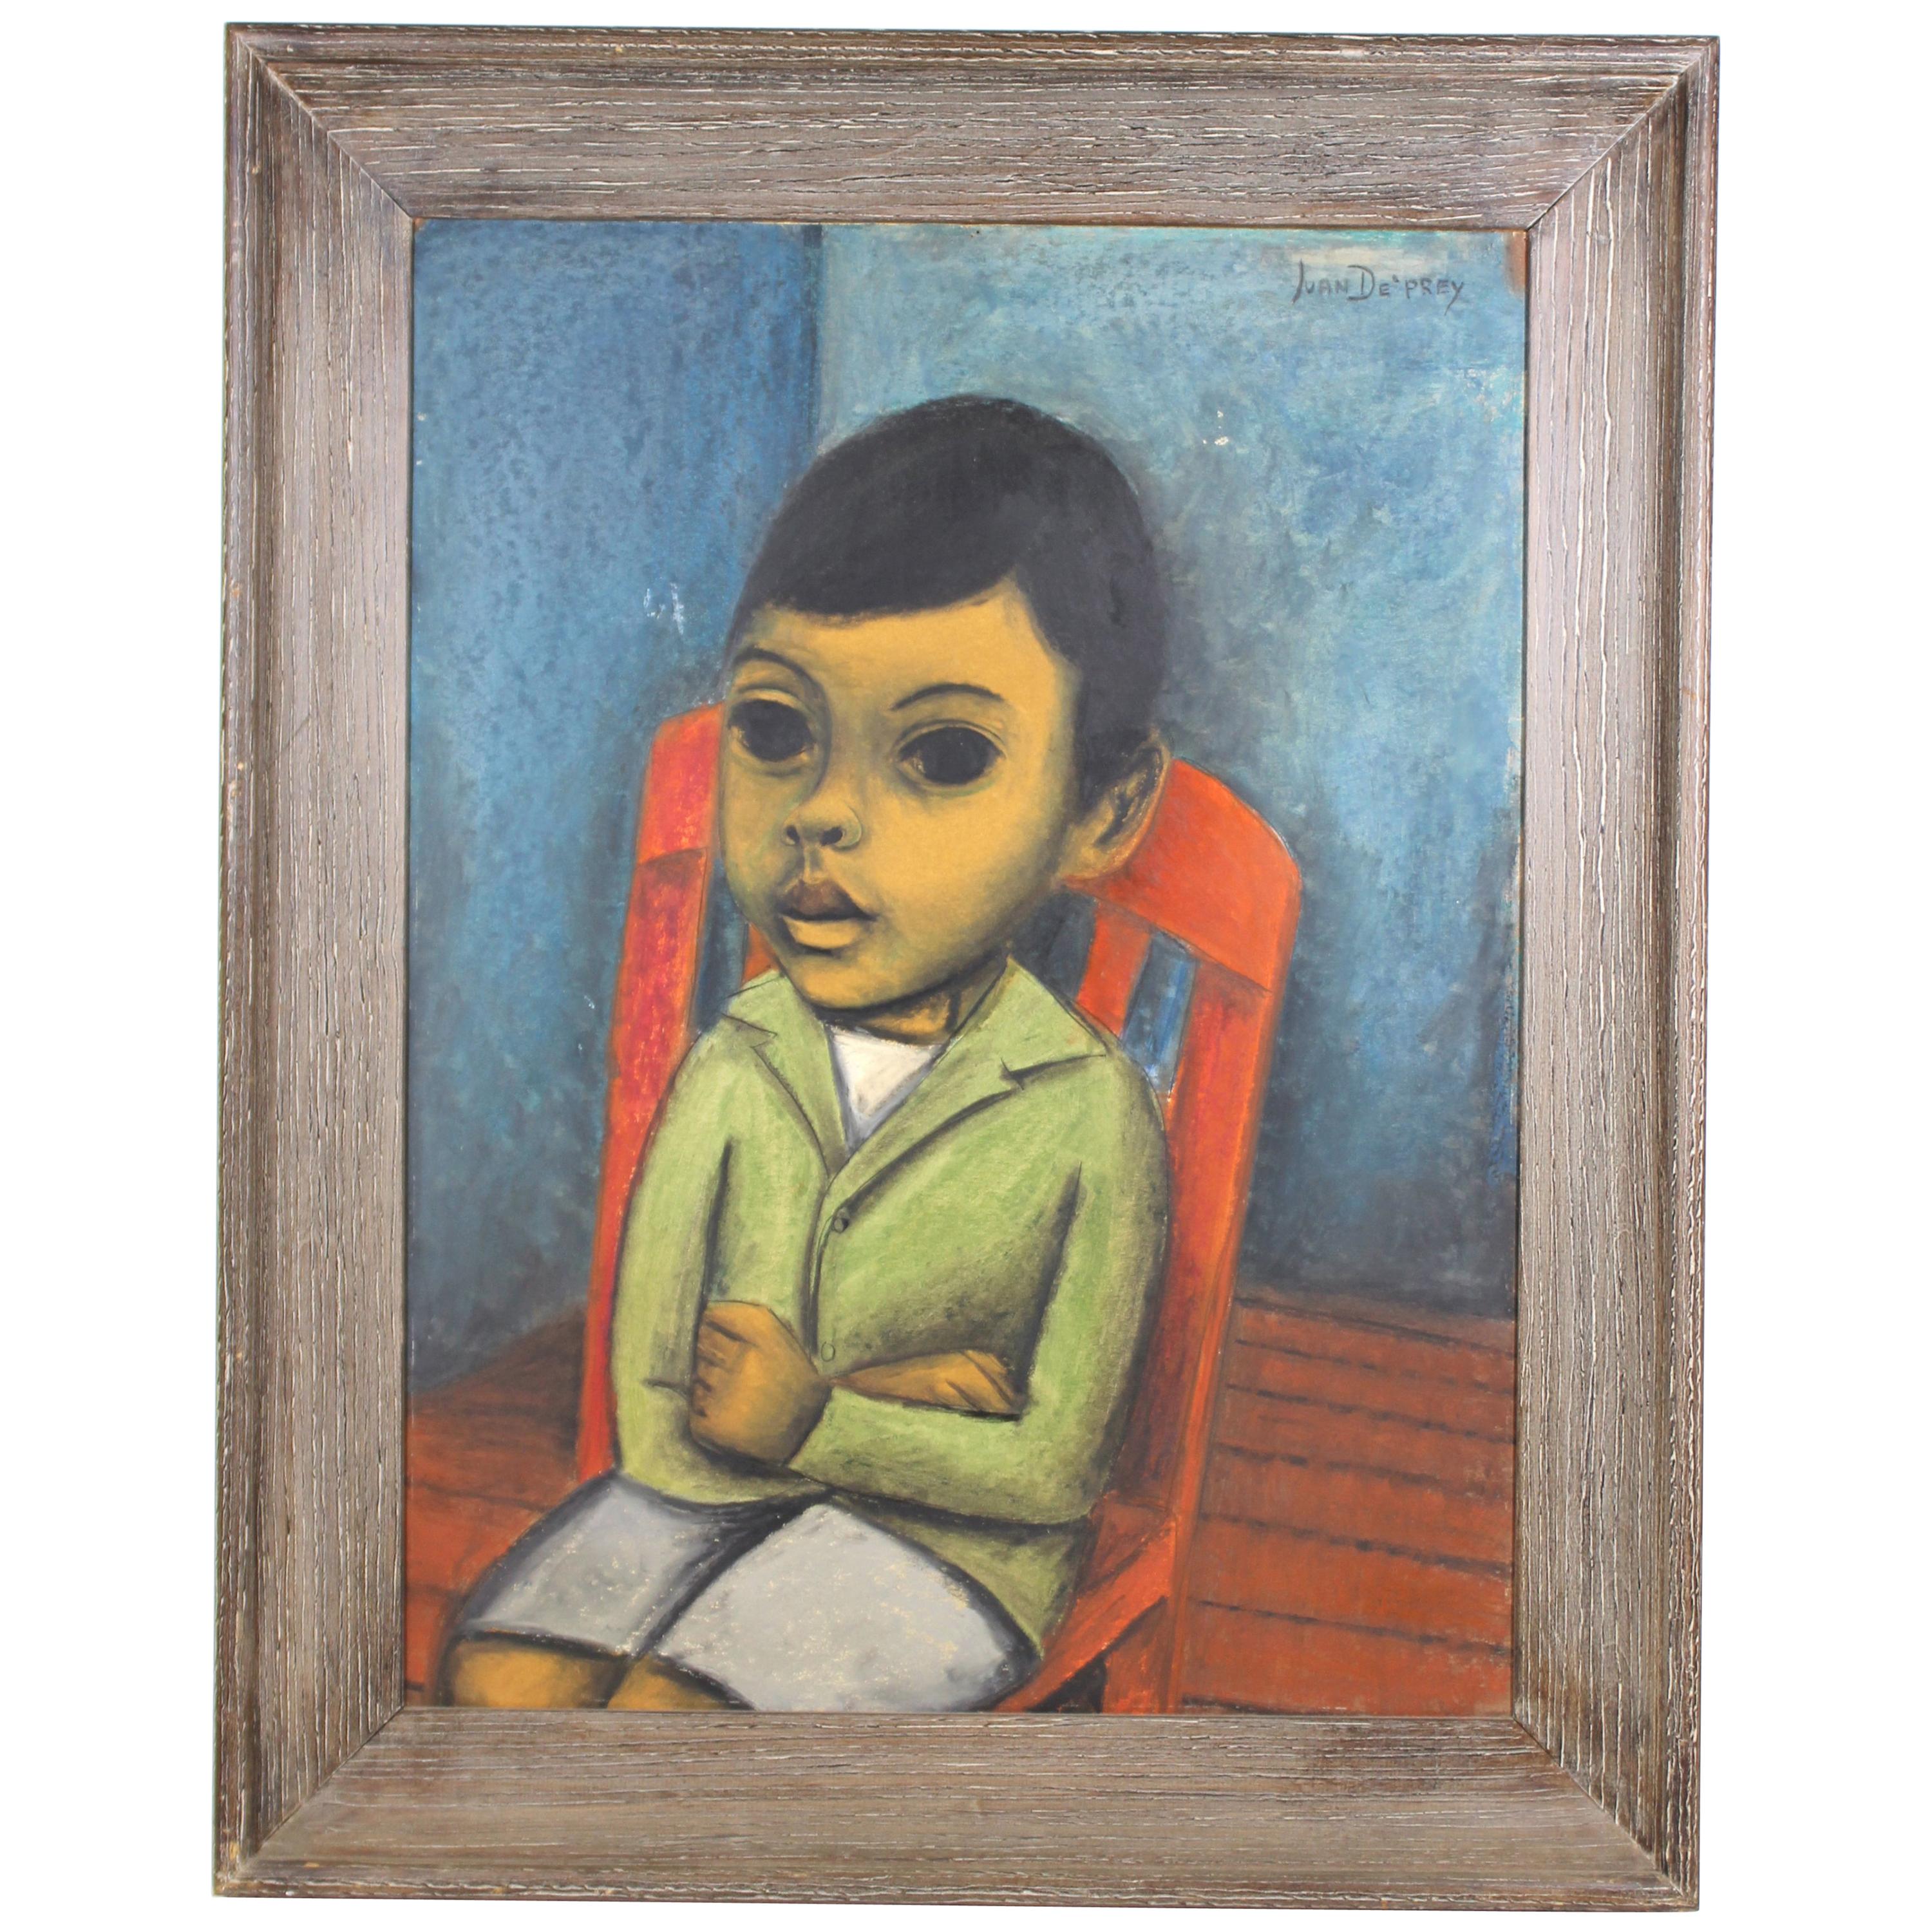 Juan De'Prey Modernist Oil Portrait Painting of a Young Boy on Chair